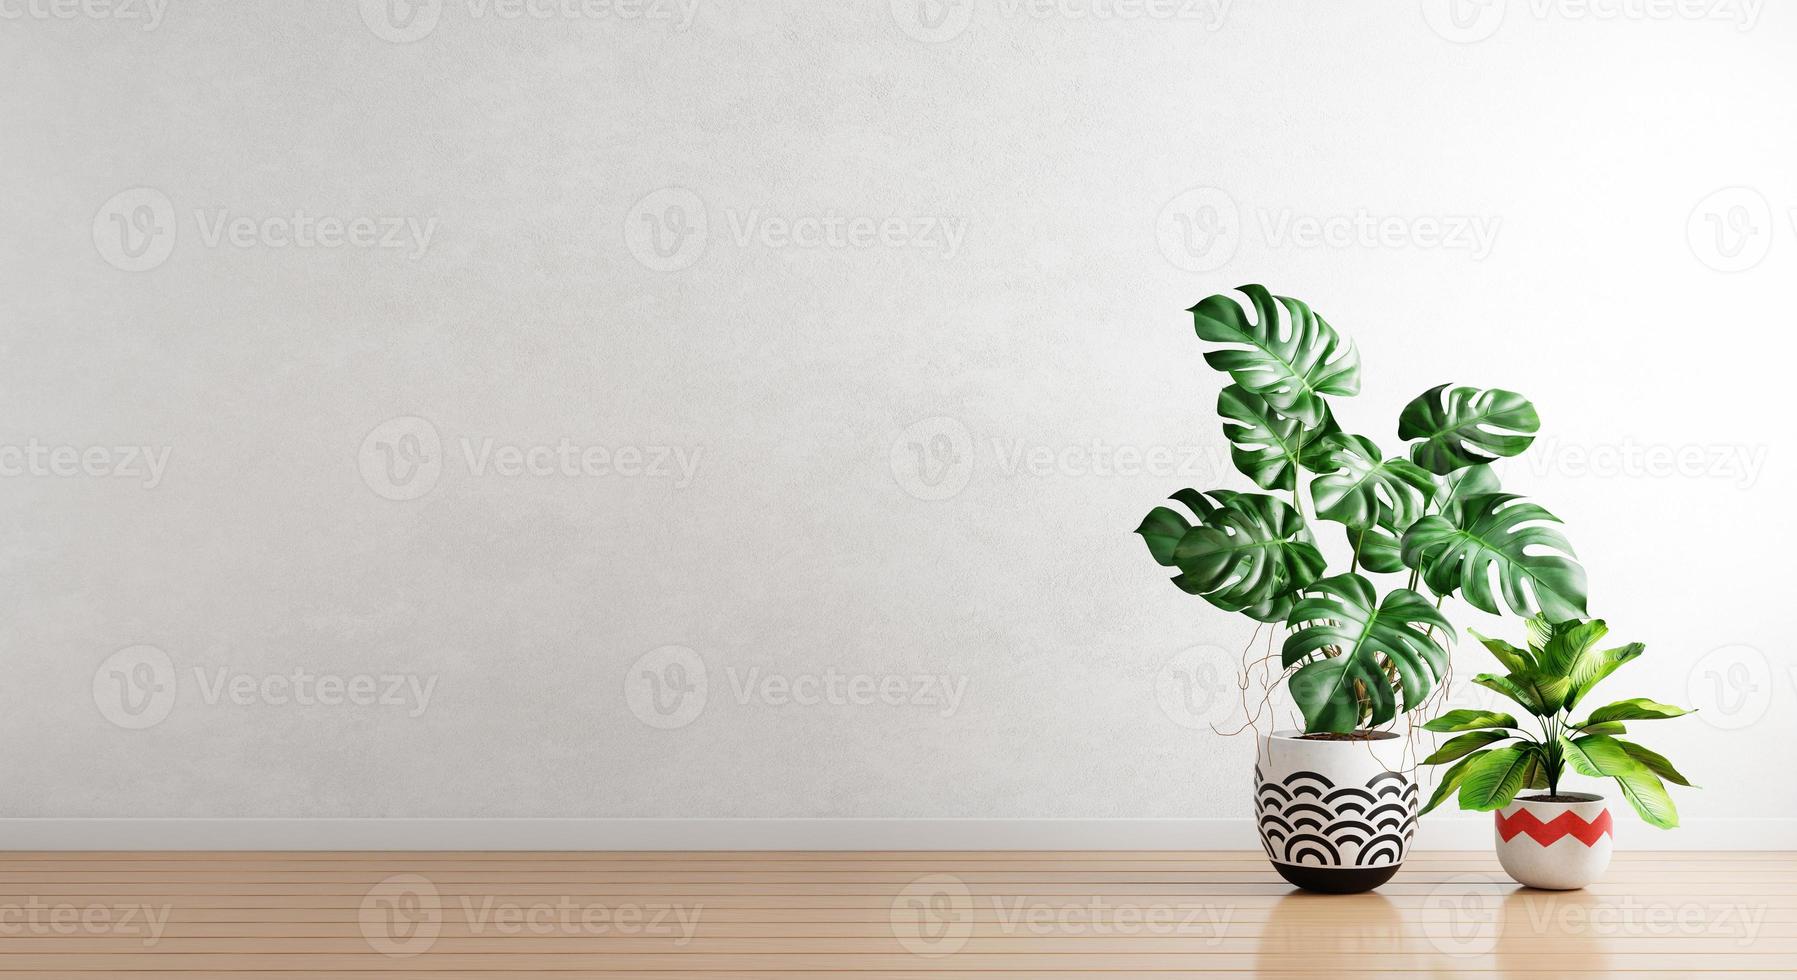 groene planten in kamerplanten pot met witte lege muur achtergrond. interieurarchitectuur en natuurlijk concept. 3D illustratie weergave foto